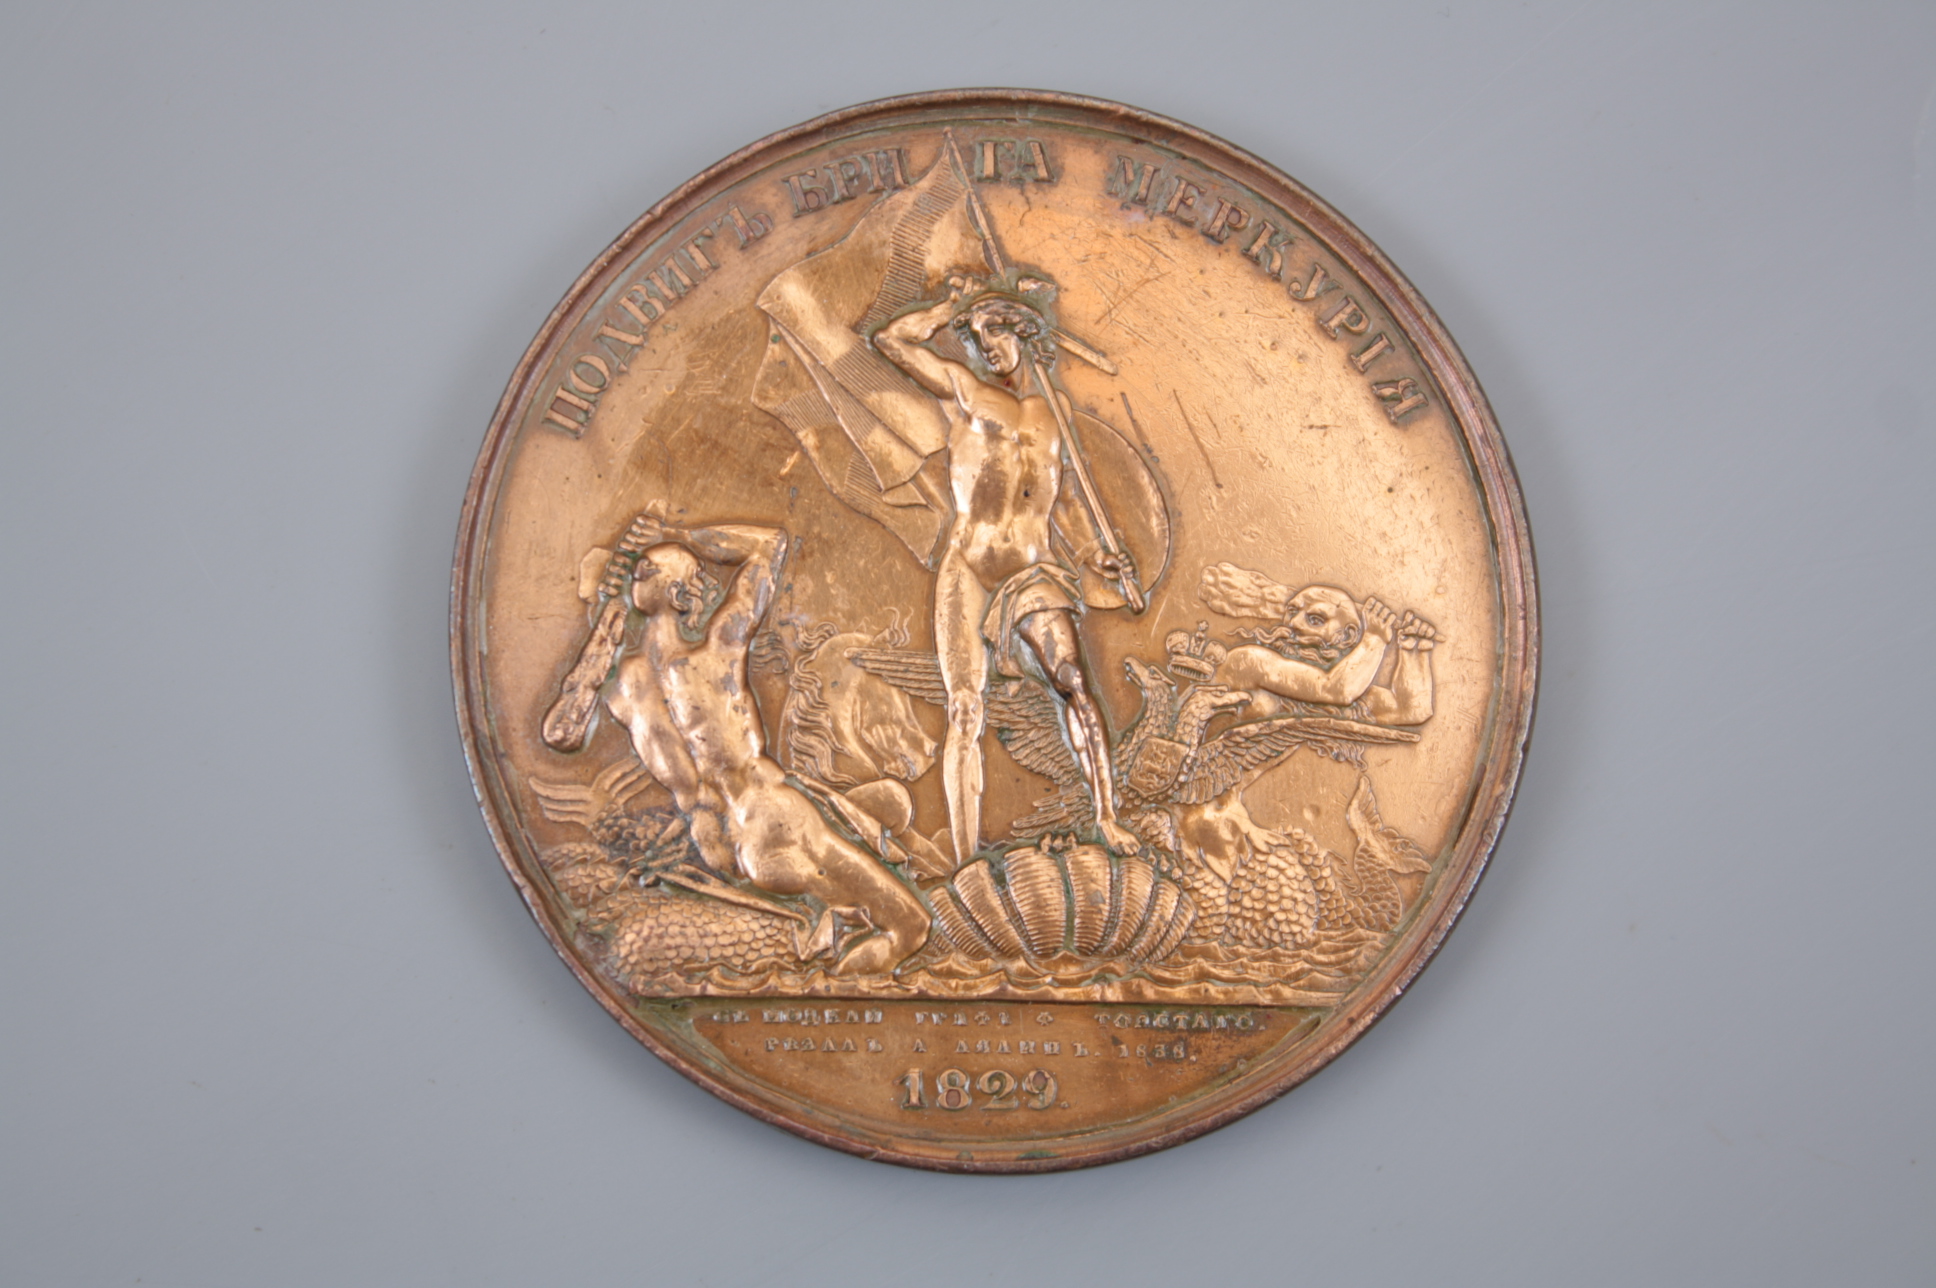 Памятная медаль «В честь геройского подвига брига «Меркурий» .